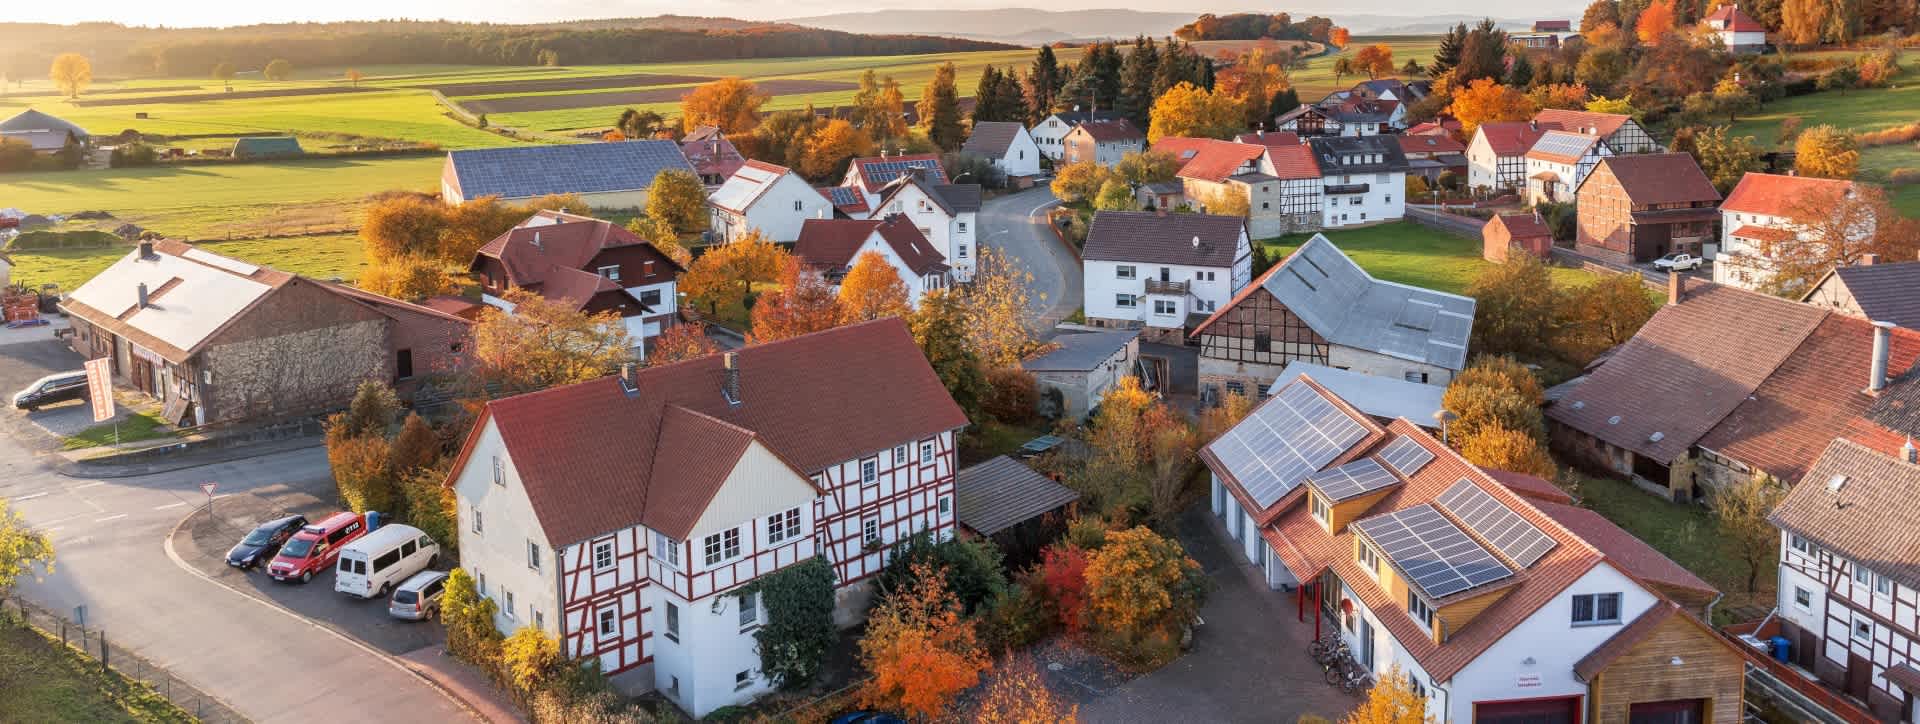 Luftbild von einer Wohnsiedlung